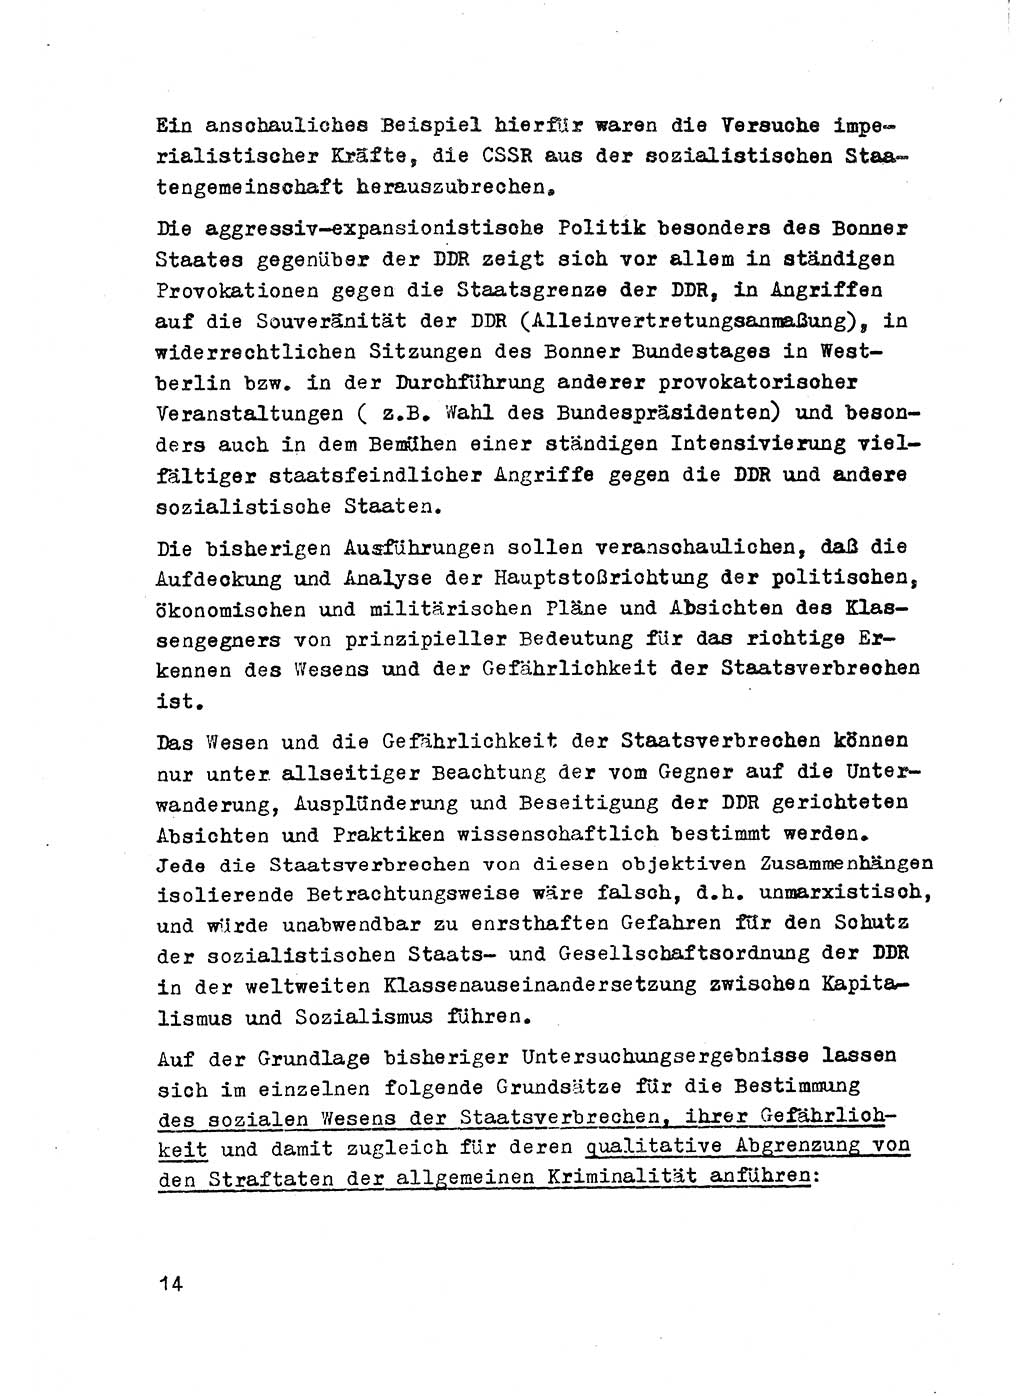 Strafrecht der DDR (Deutsche Demokratische Republik), Besonderer Teil, Lehrmaterial, Heft 2 1969, Seite 14 (Strafr. DDR BT Lehrmat. H. 2 1969, S. 14)